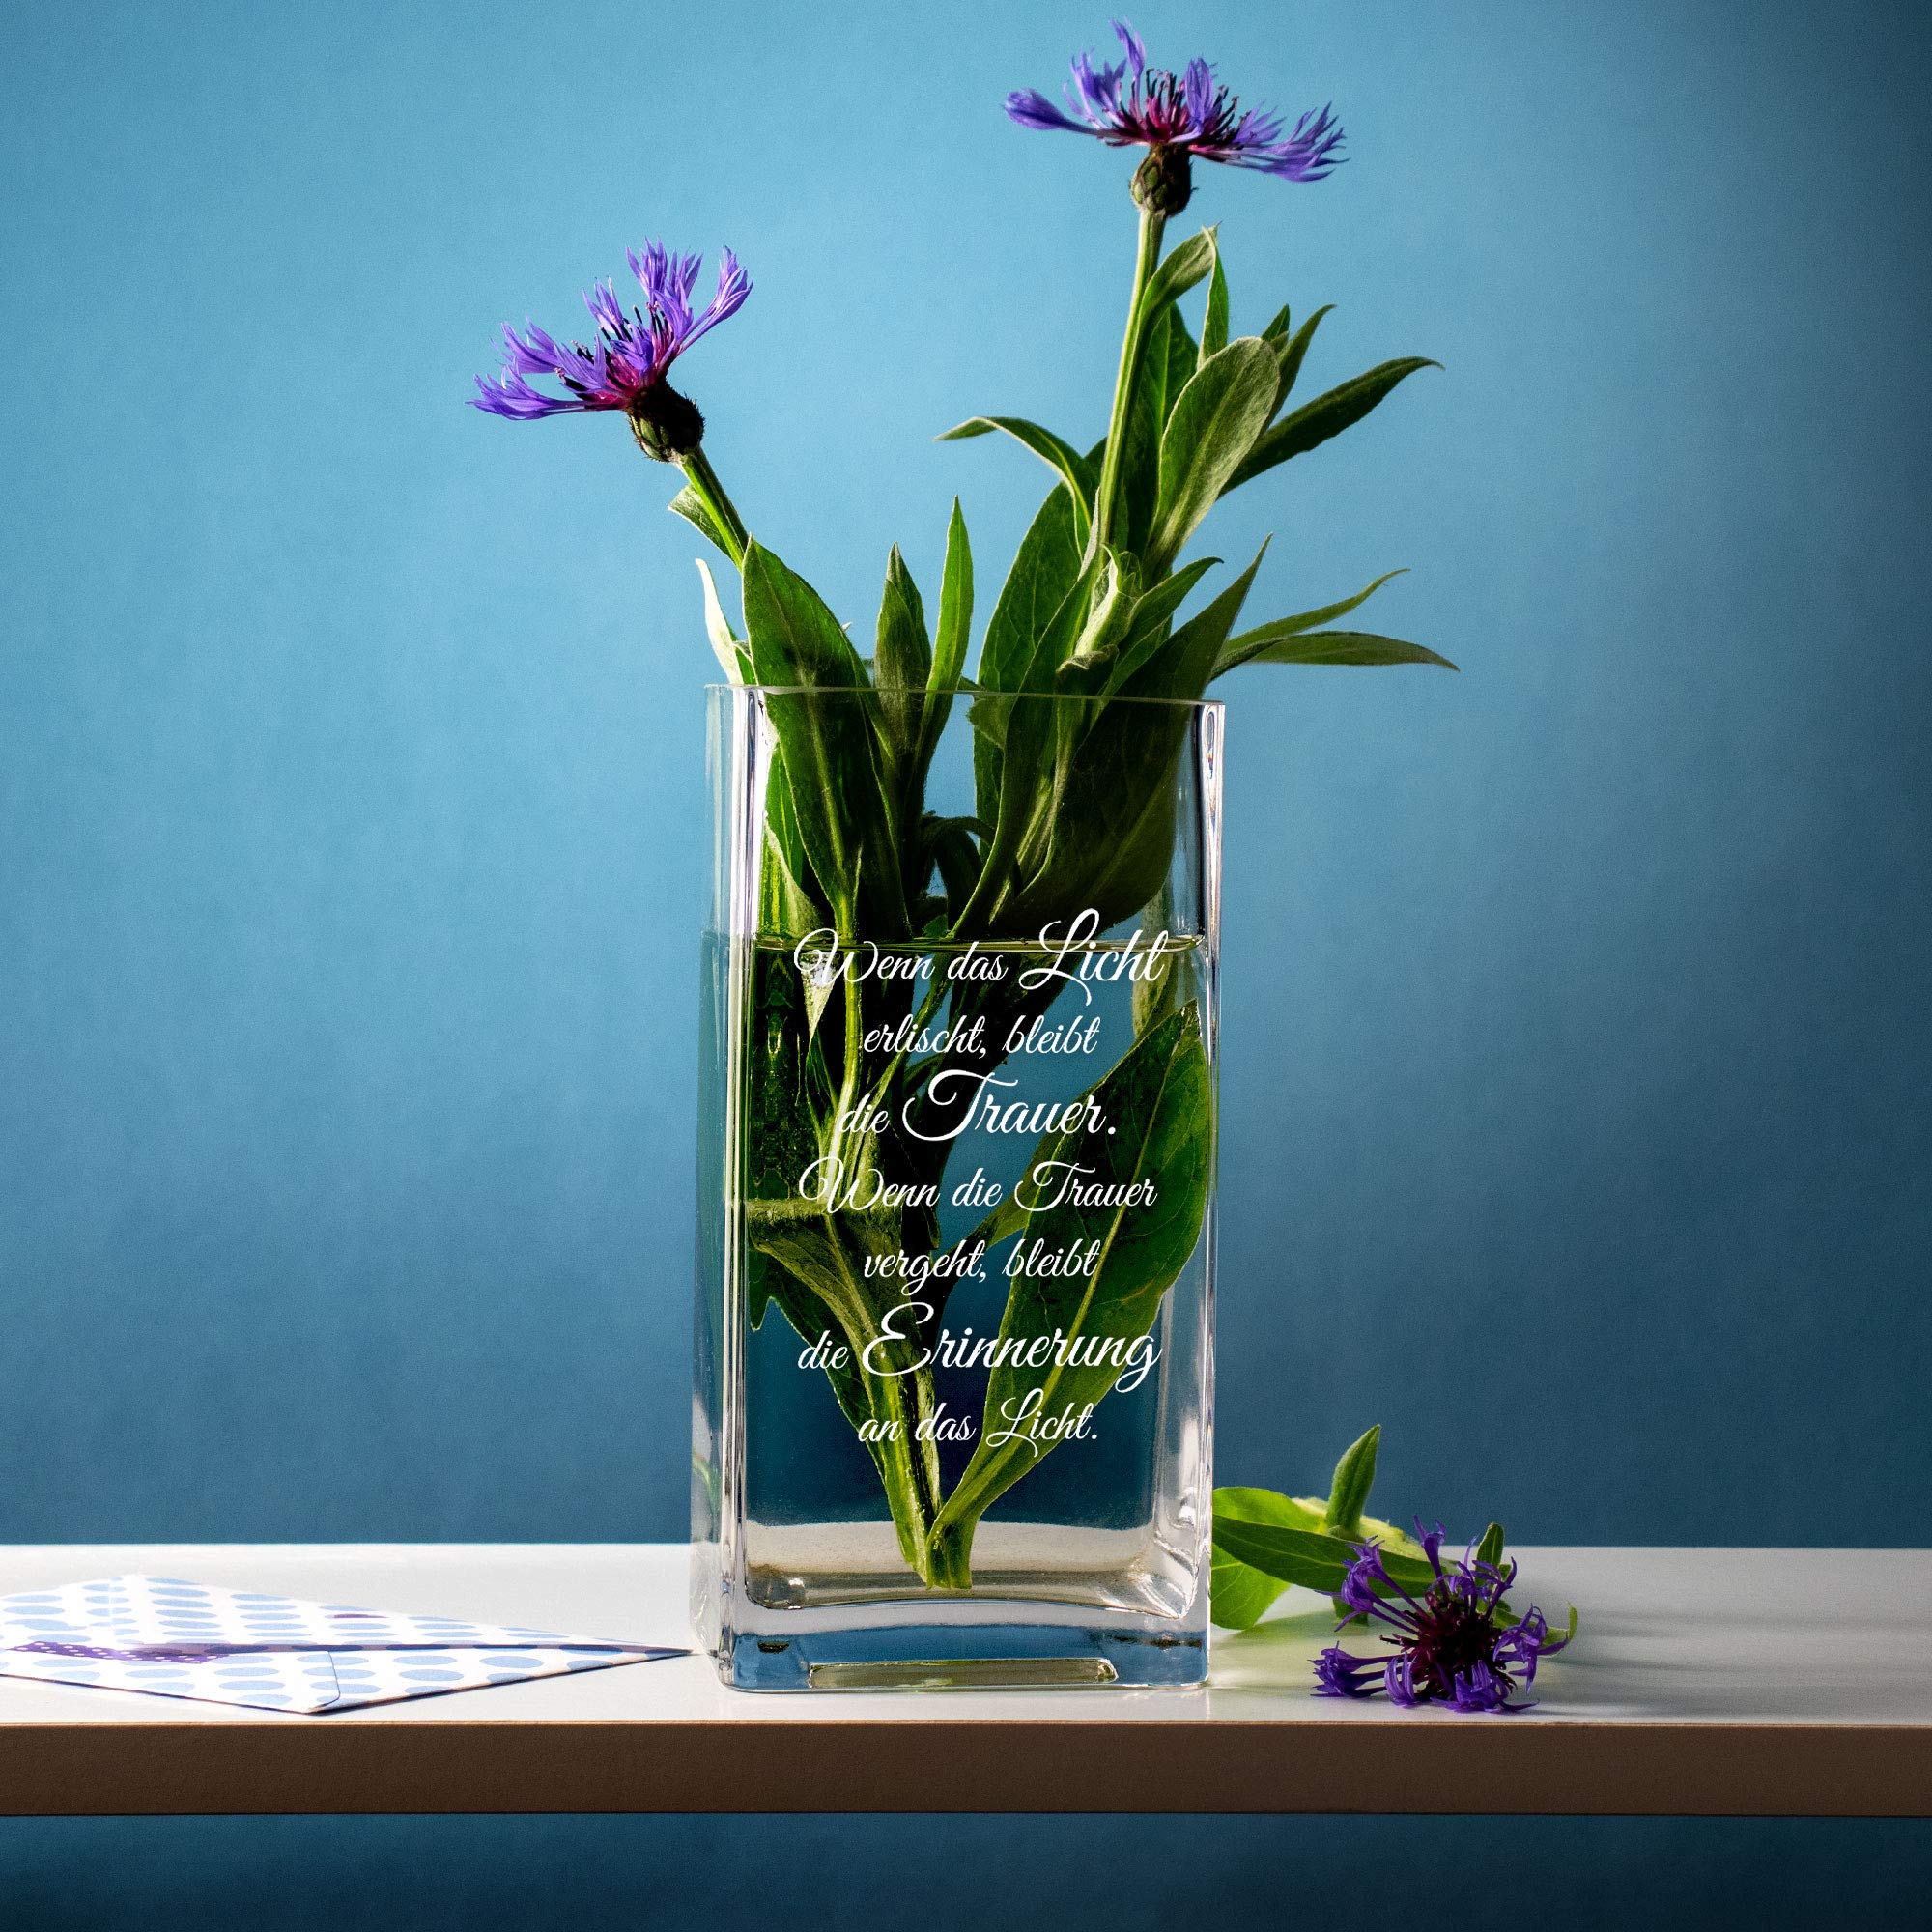 Eckige Vase mit Gravur zur Trauer